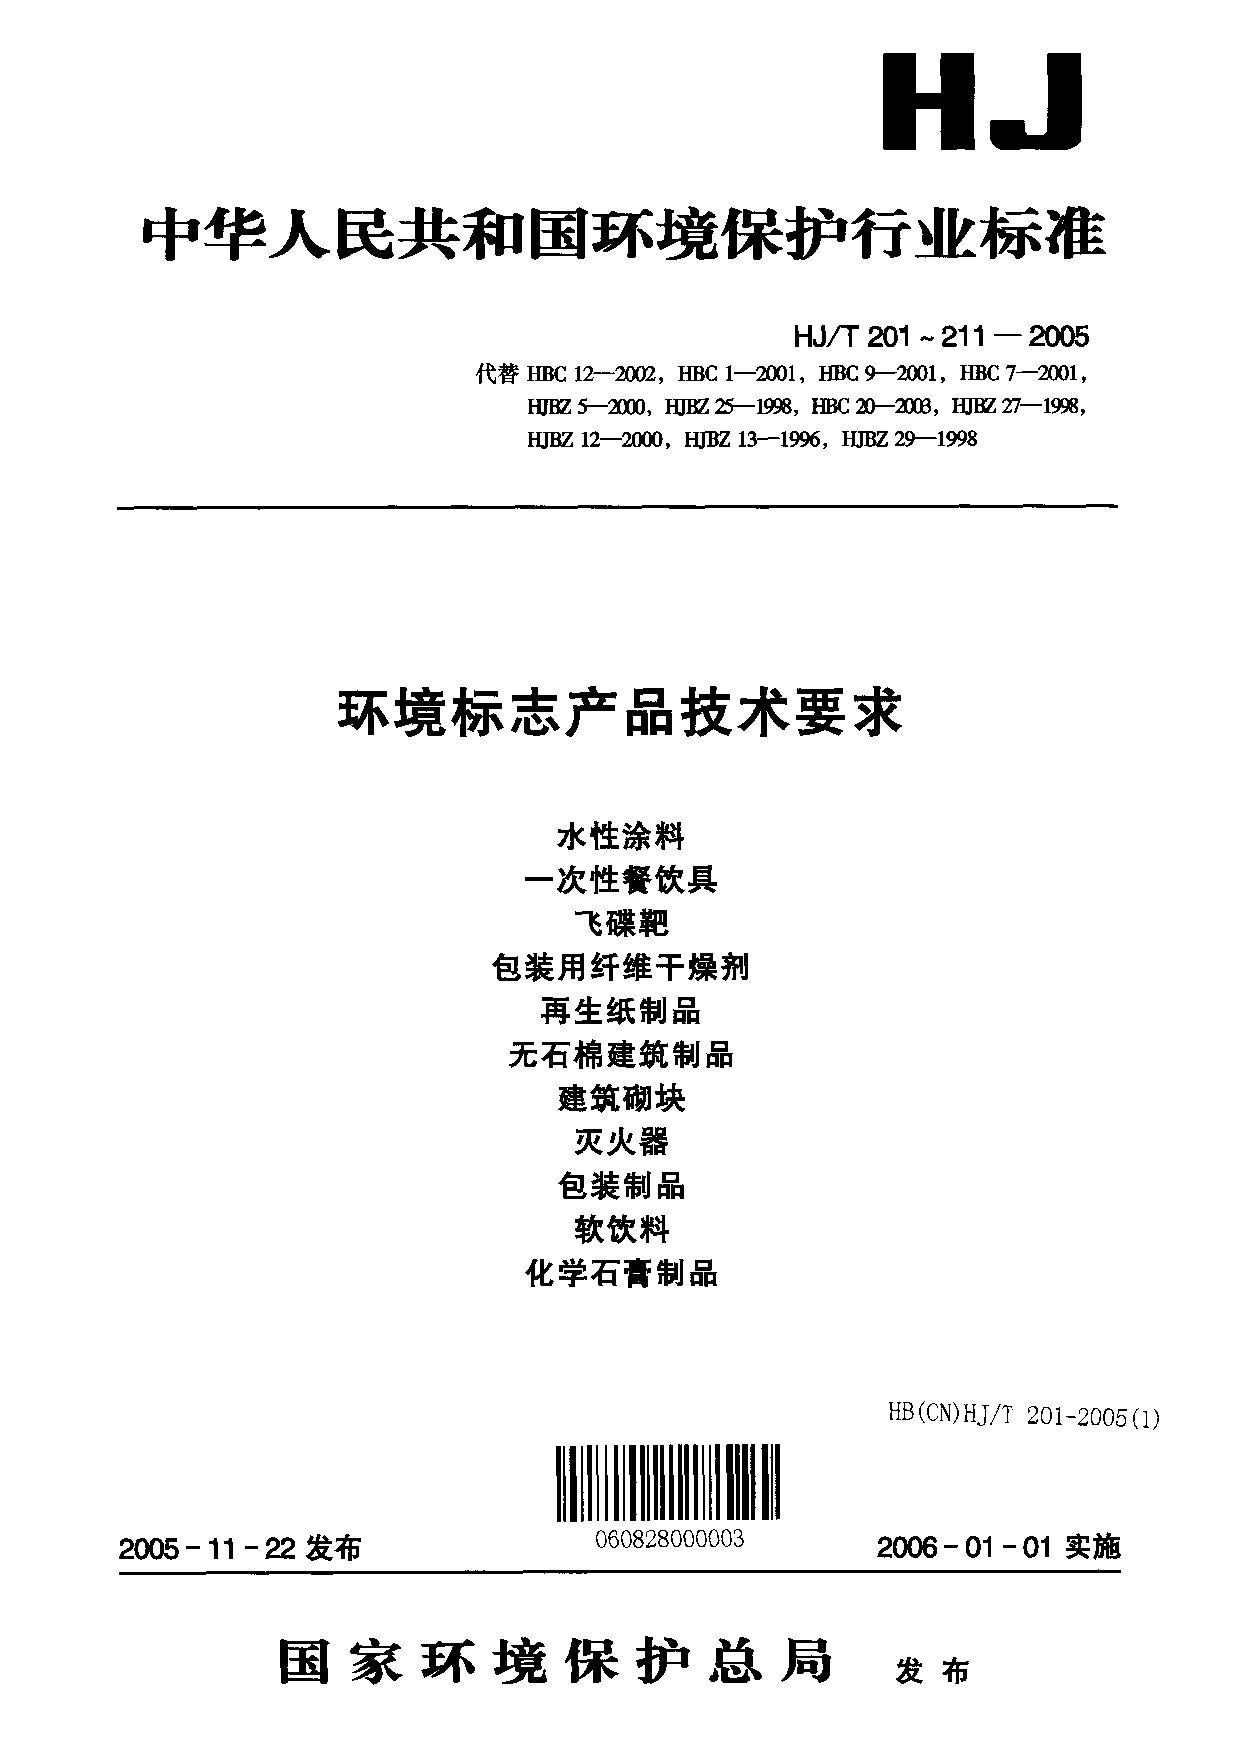 HJ/T 202-2005封面图